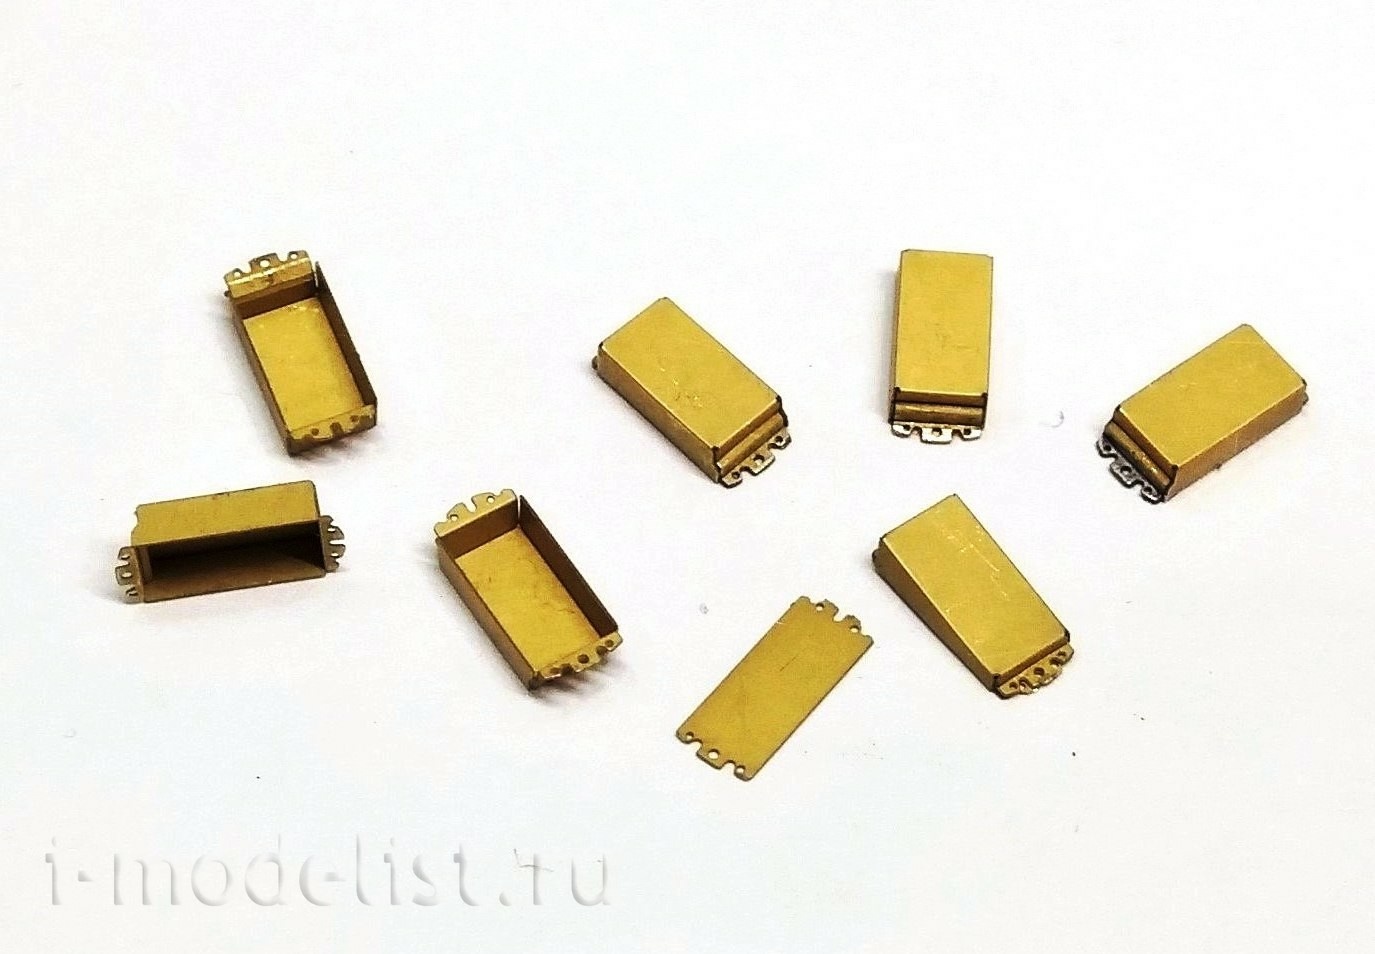 035277 Microdesign 1/35 Blocks DZ Pin 1 (TYPE 3,4) 42 PCs.